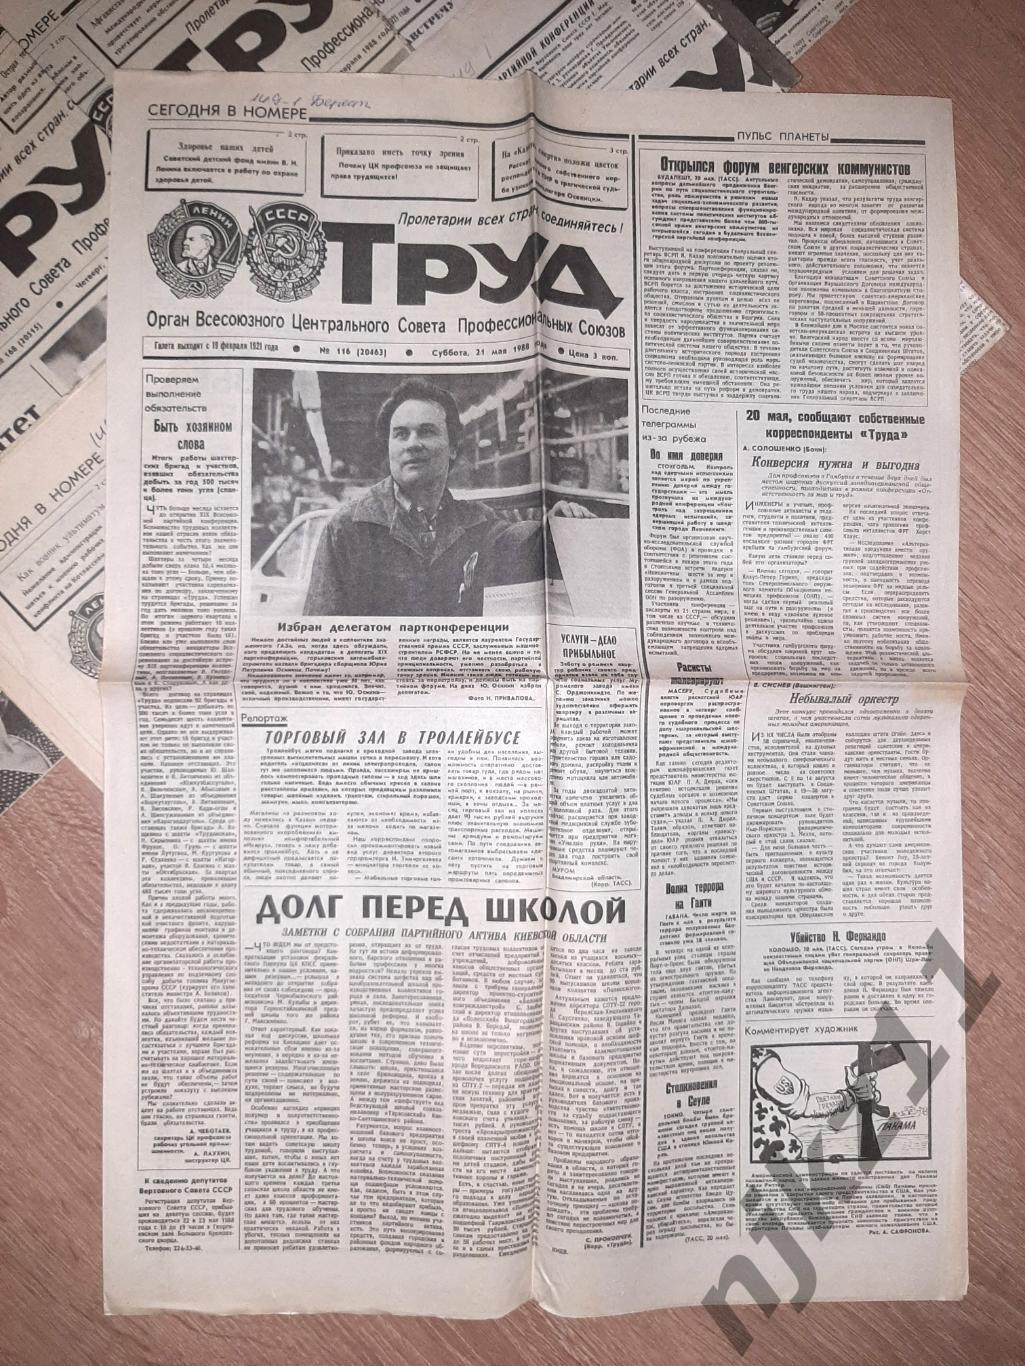 22 газеты Труд за 1988-89г. Есть ЧЕ 1988г по футболу, есть спорт 1